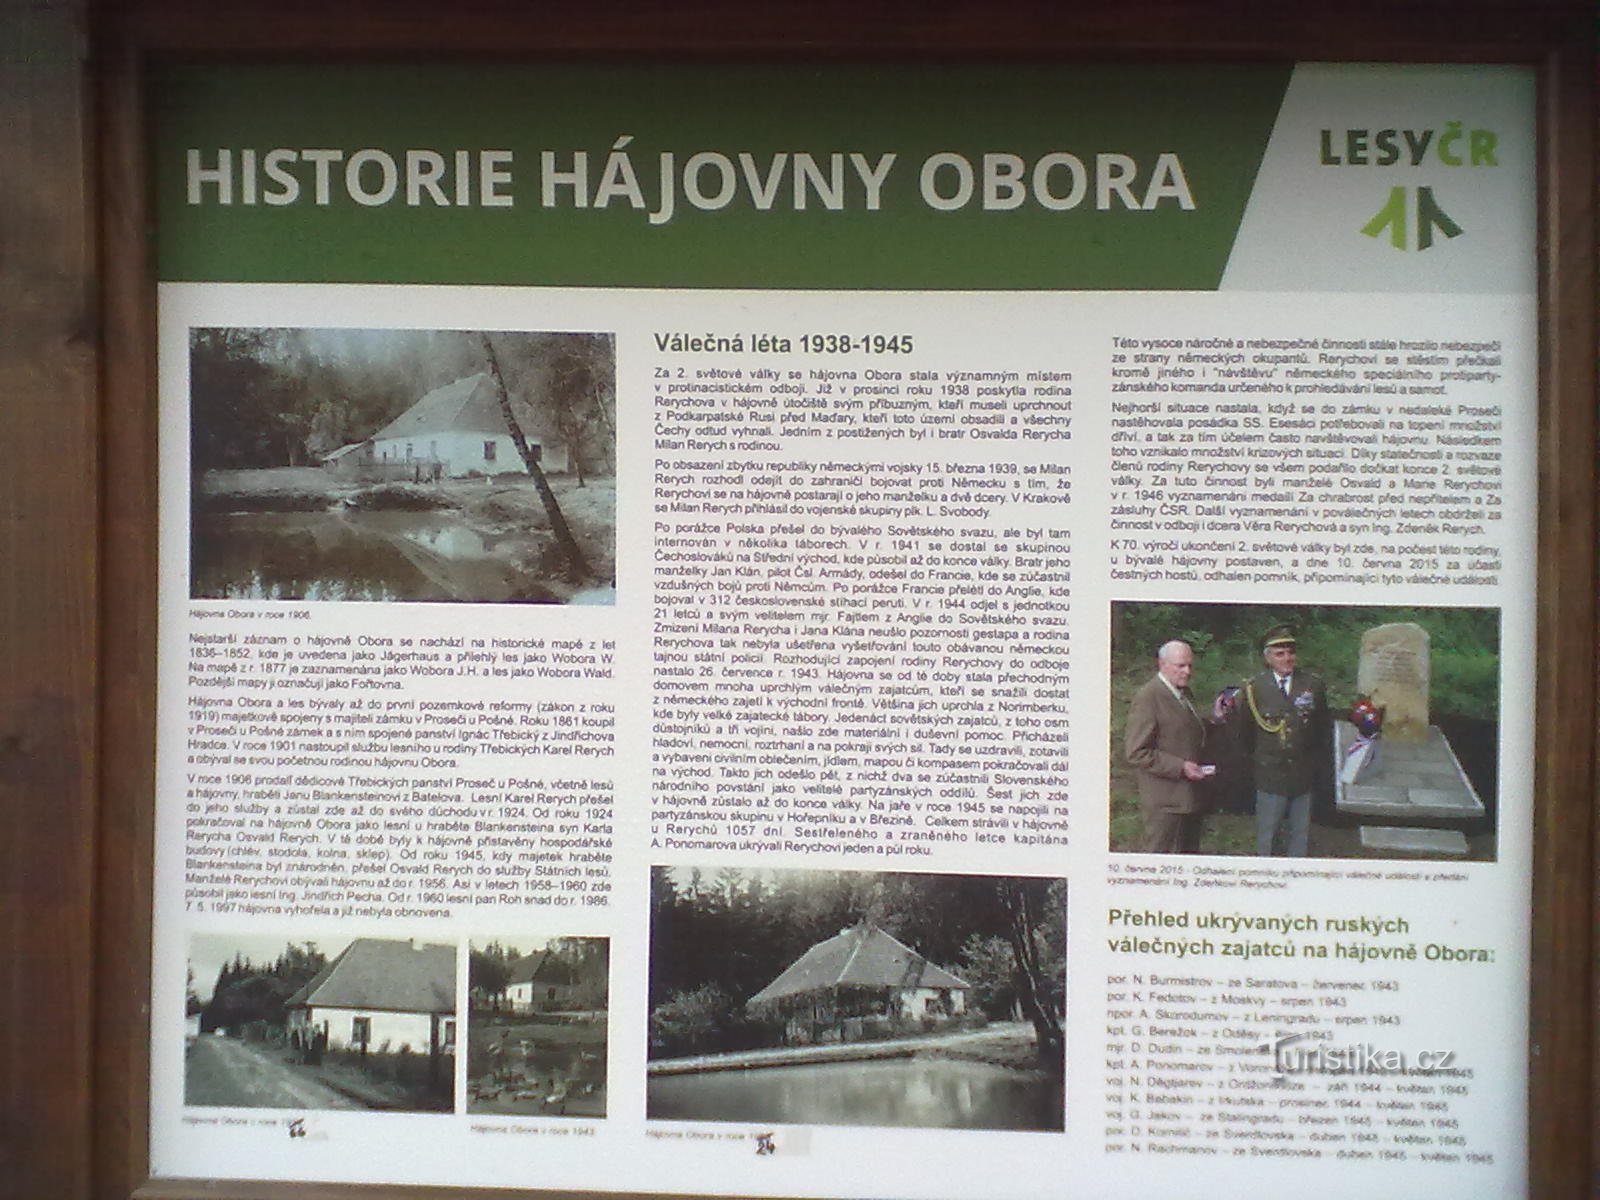 0. Dawna kryjówka Rerychowa - w czasie wojny rodzina ukrywała zbiegłych więźniów z obozów koncentracyjnych.